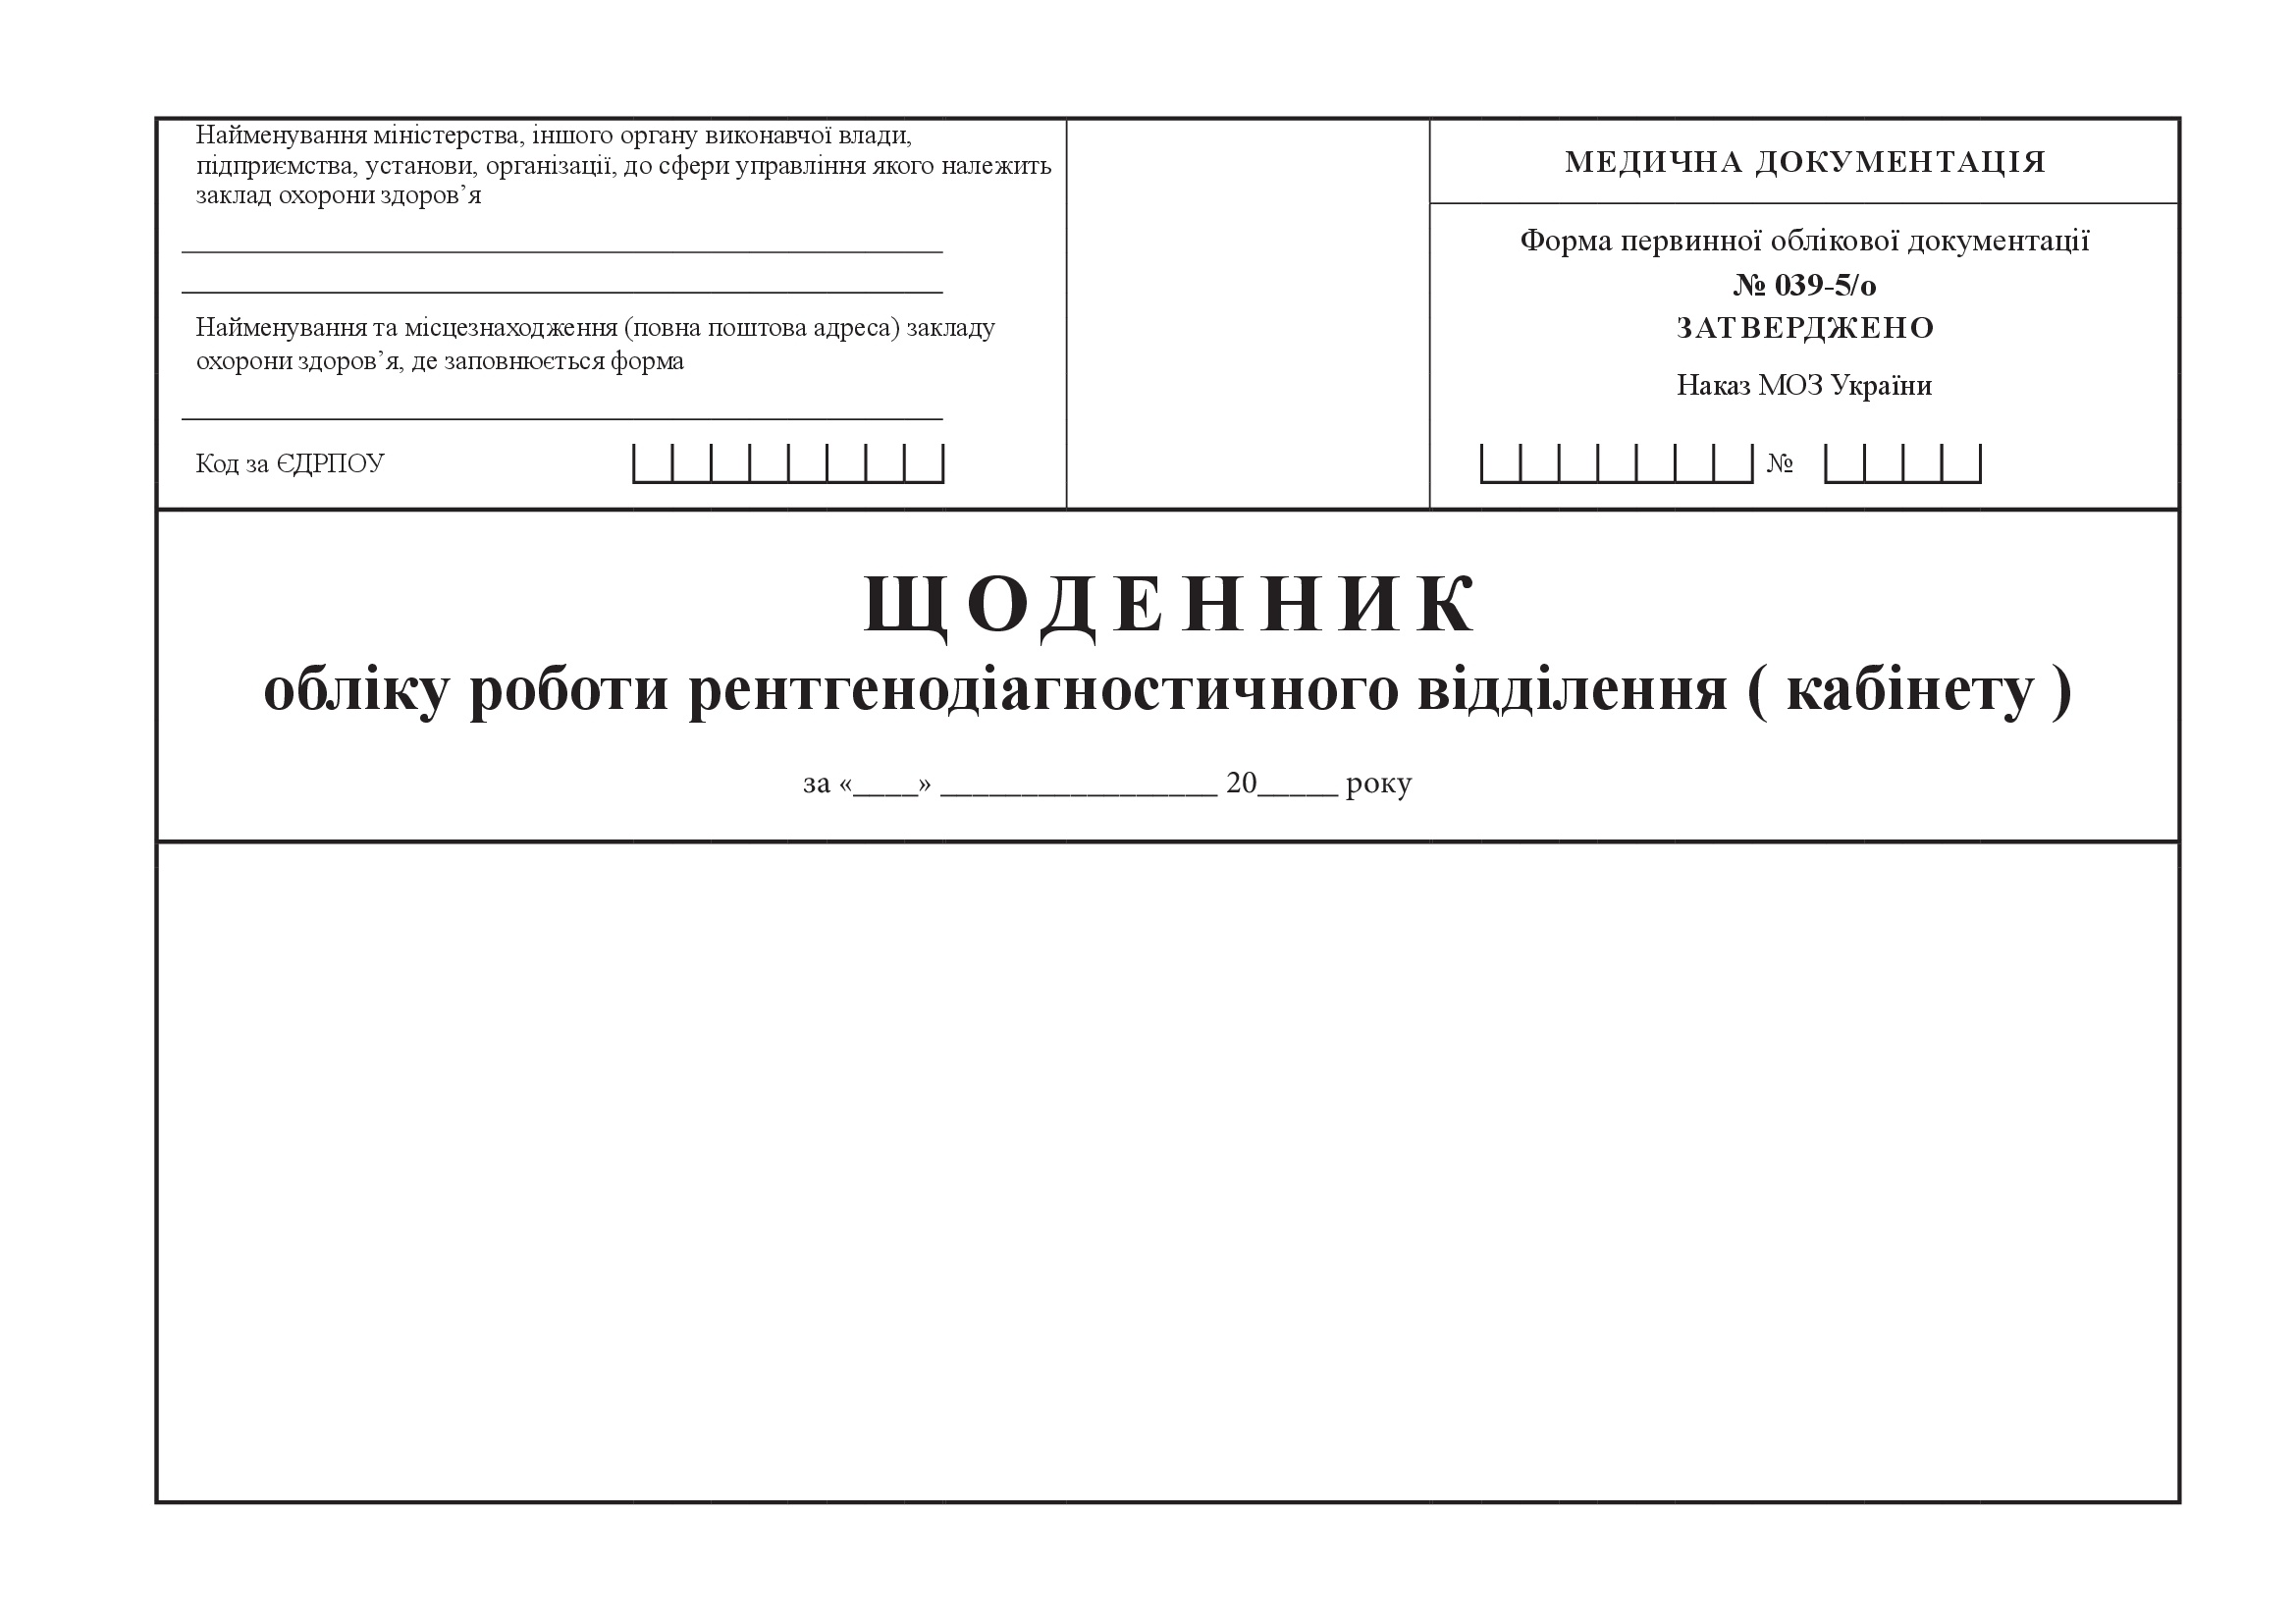 Щоденник обліку роботи рентгенодіагностичного відділення (кабінету), форма 039-5/о. Автор — Міністерство охорони здоров'я України. 